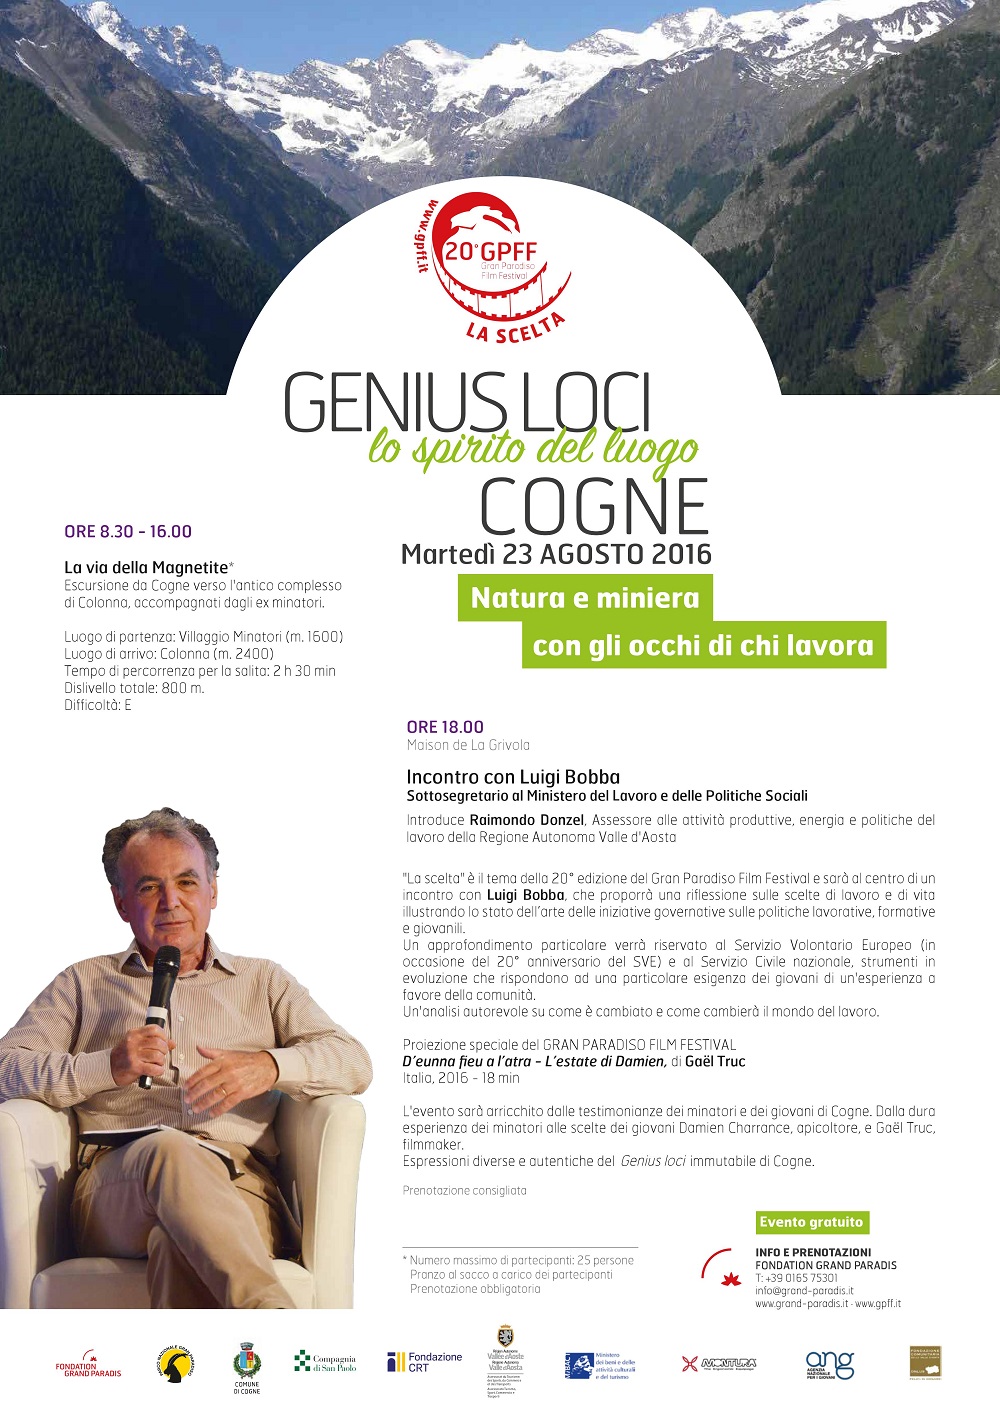 Genius Loci Cogne